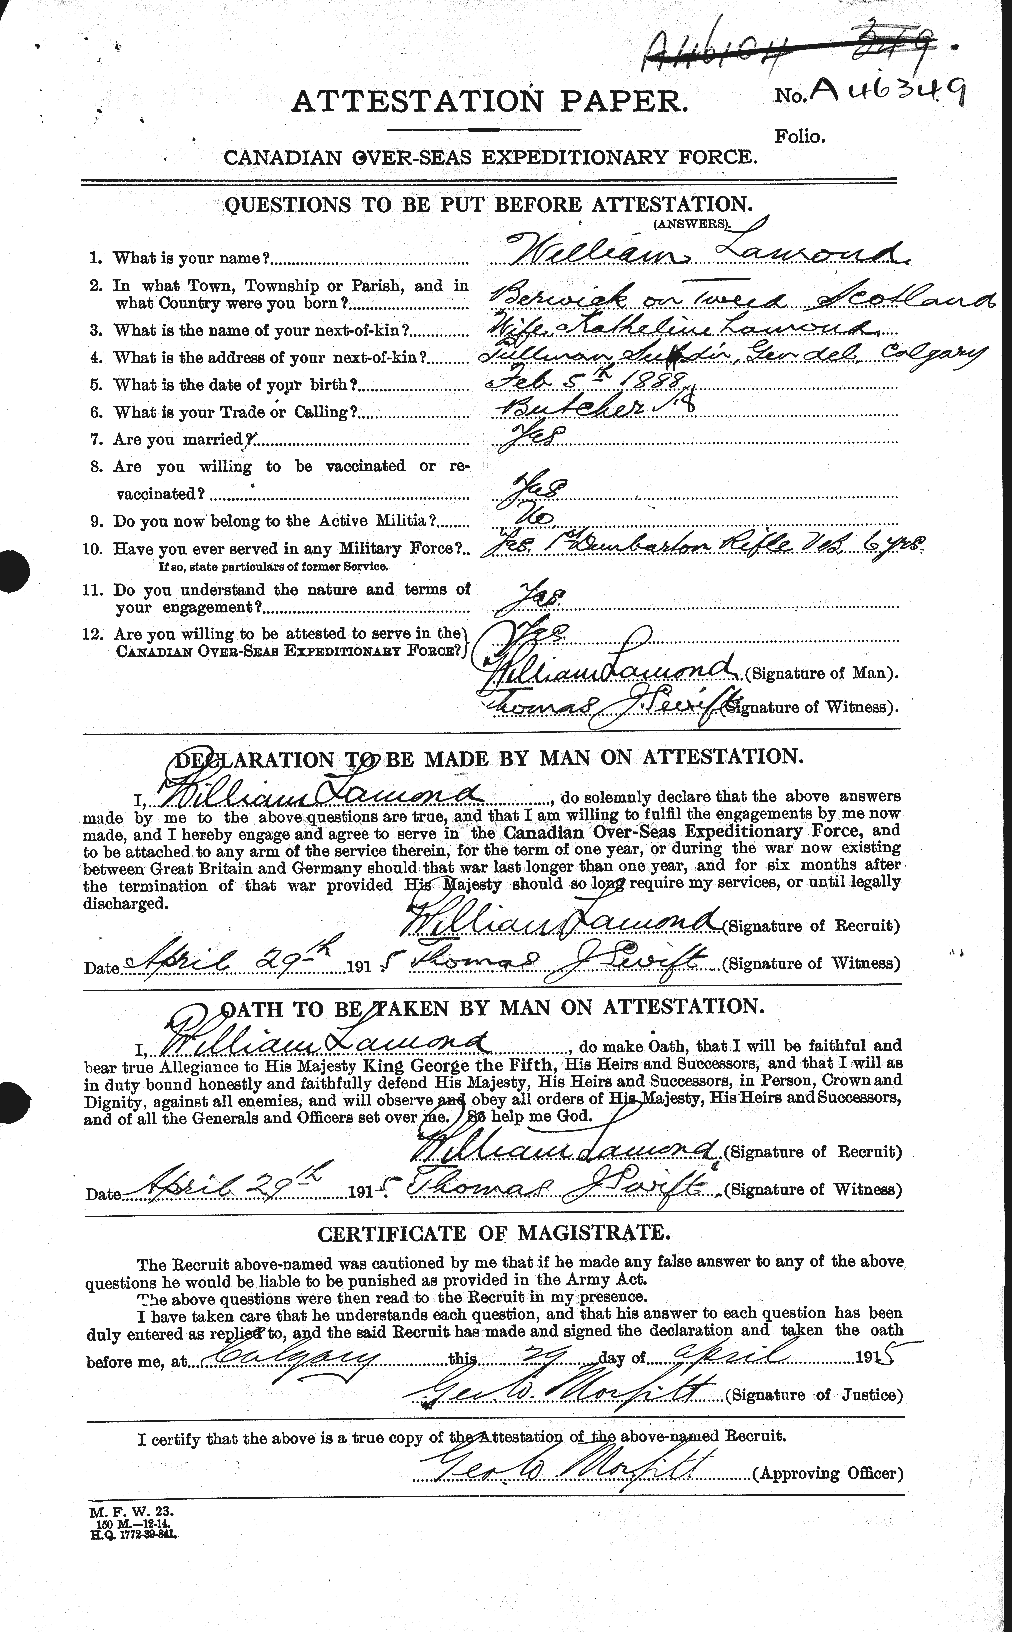 Dossiers du Personnel de la Première Guerre mondiale - CEC 446091a